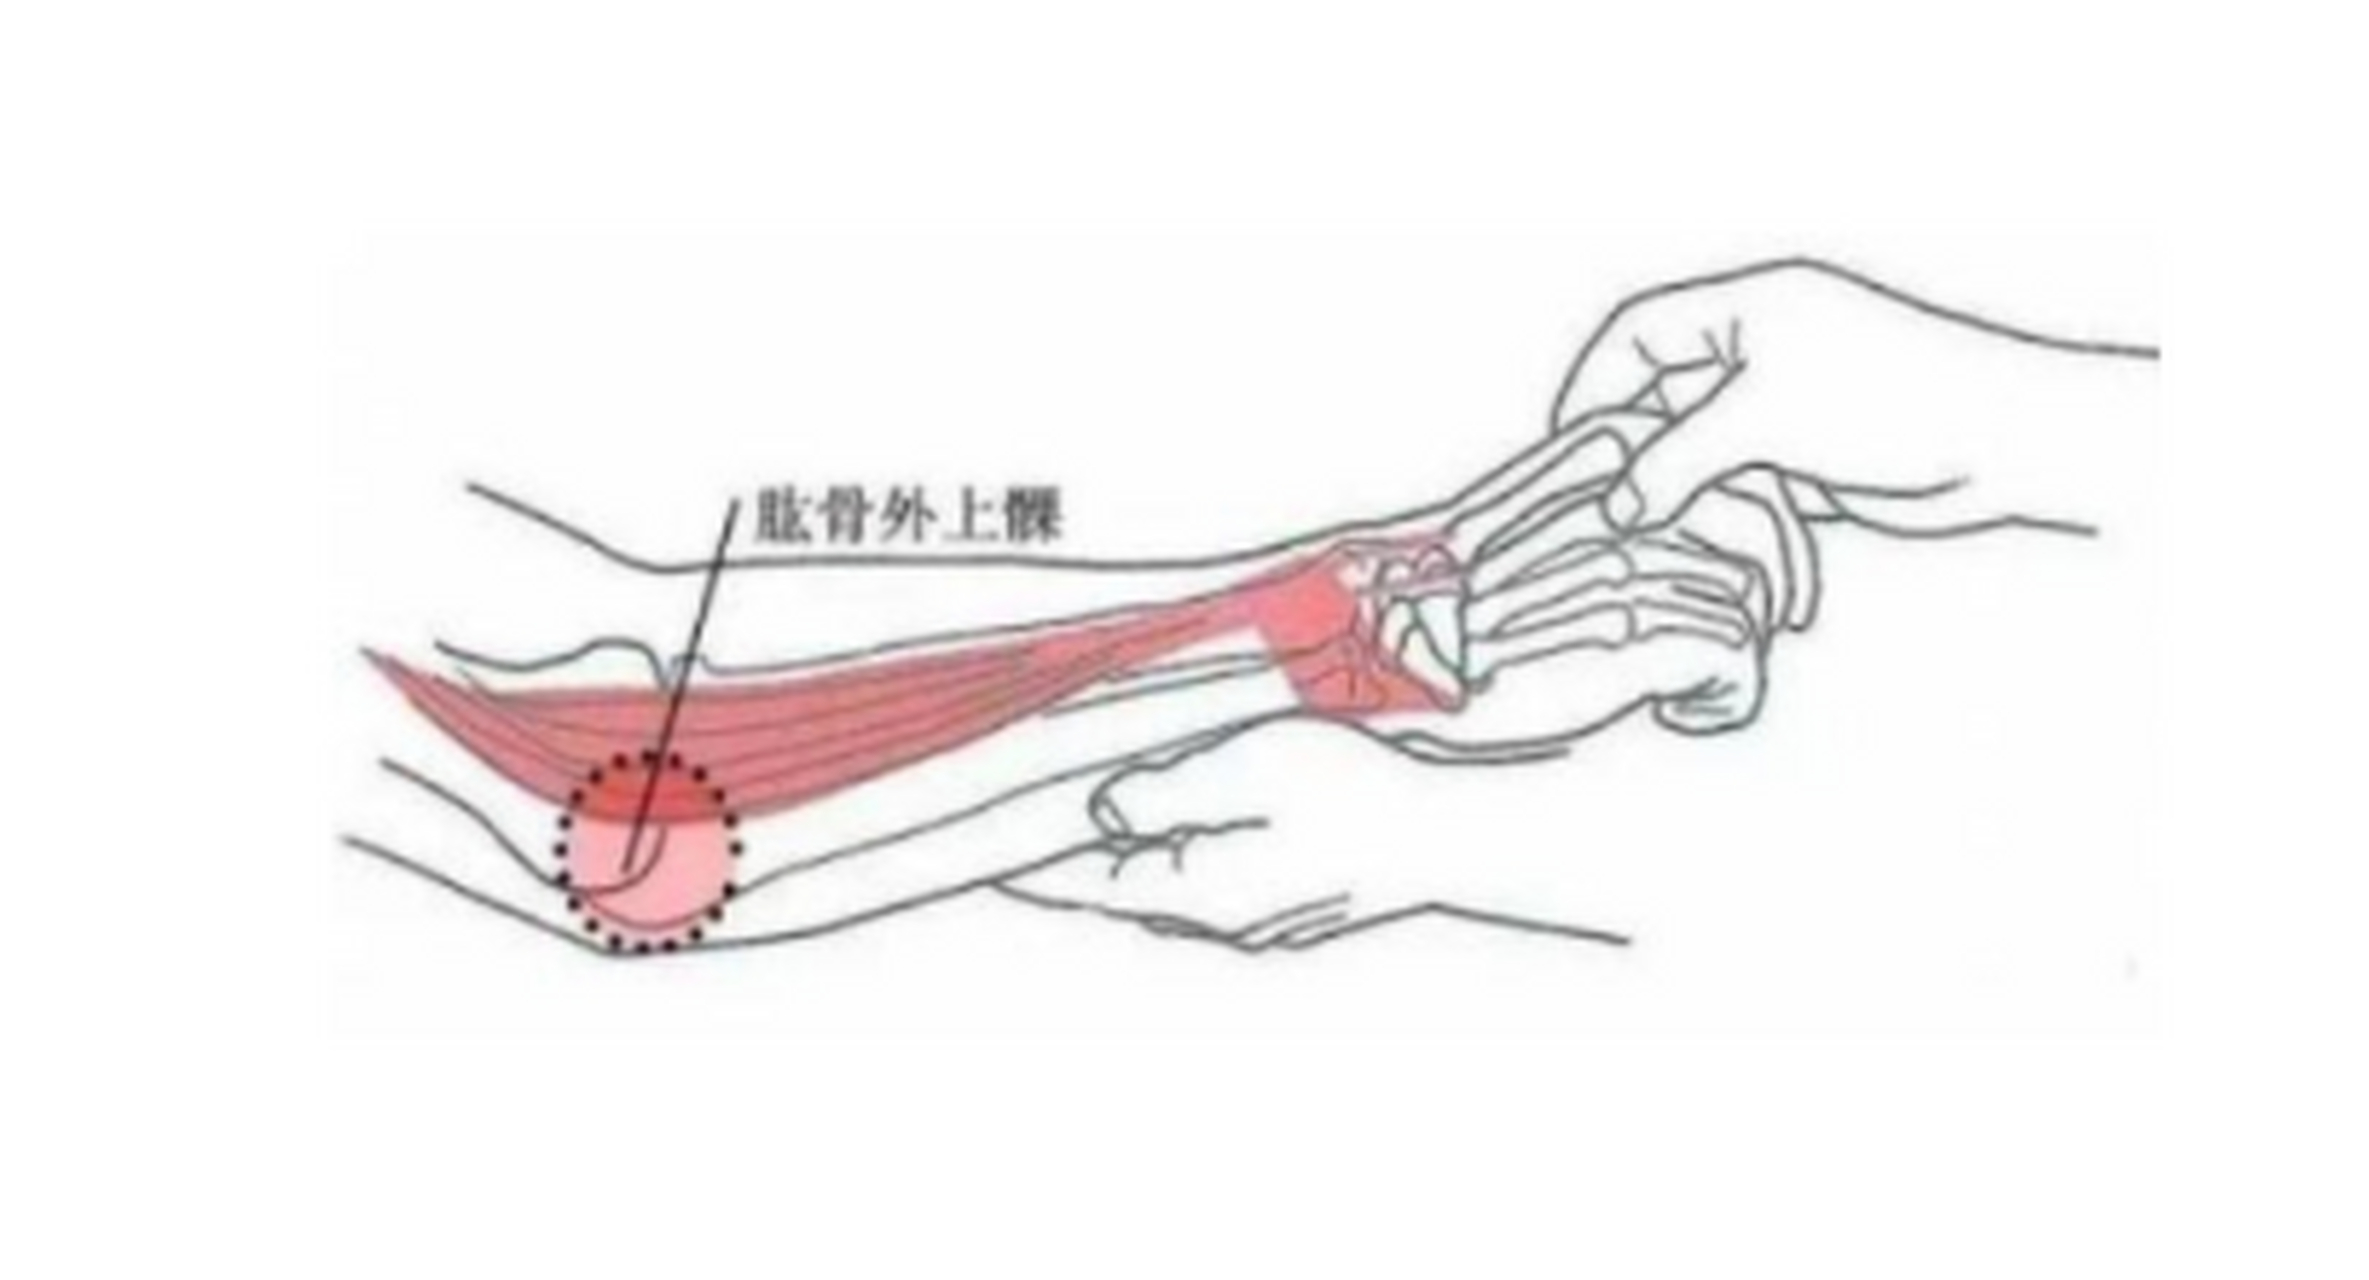 网球肘又被称为"肱骨外上髁炎,击球过程中手臂过度旋后位或旋前,主